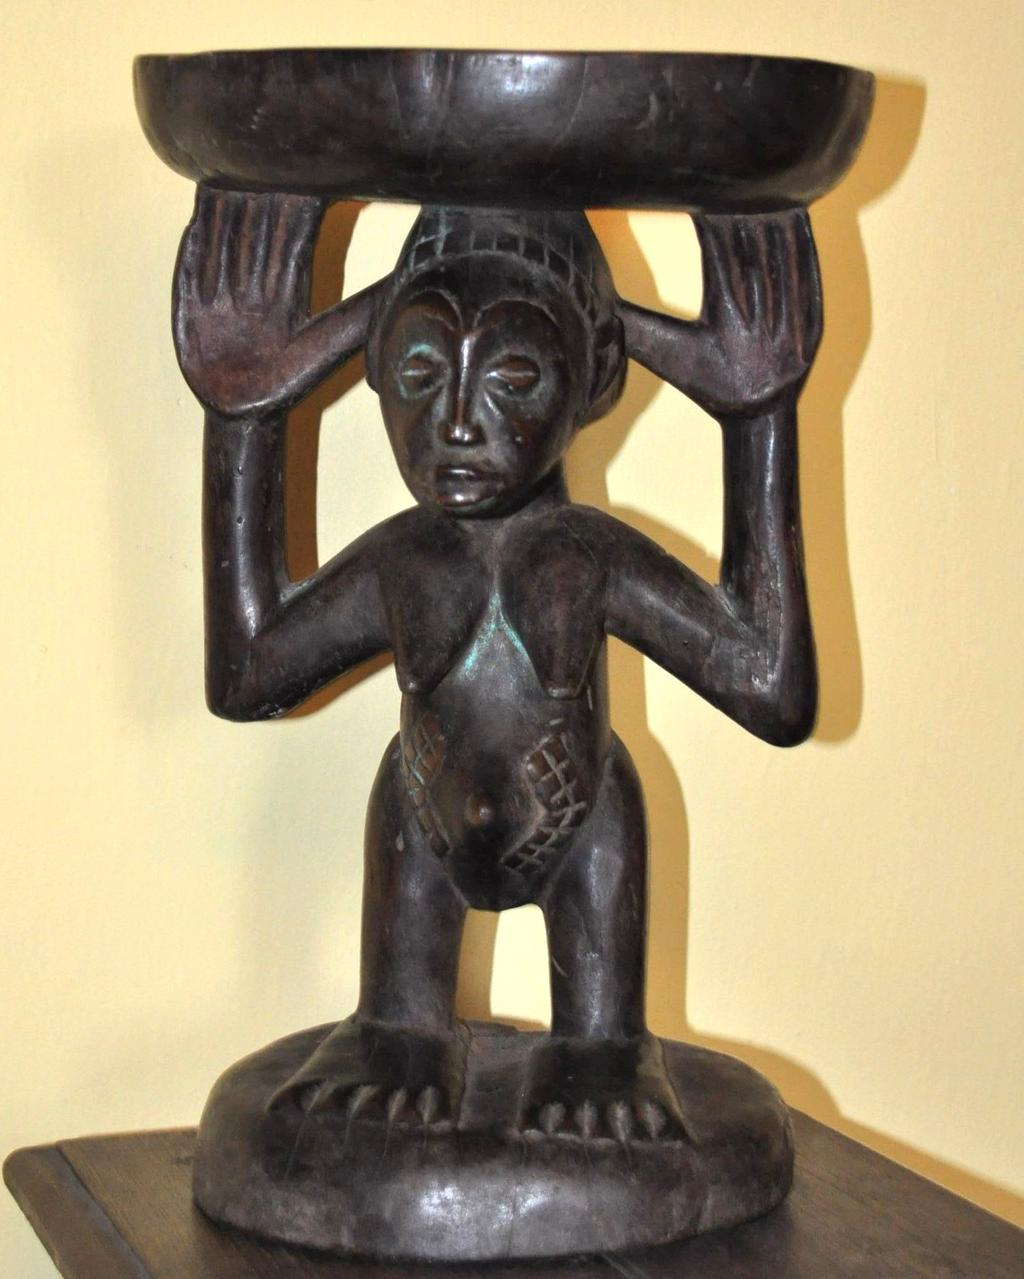 KONGO Baluba typowa rzeźba tego plemienia z charakterystycznym wzorem na brzuchu w okolicy pępka. Sztuka Balubów to arcydzieła plastyczne nie tylko w skali Konga, ale i całej Afryki.